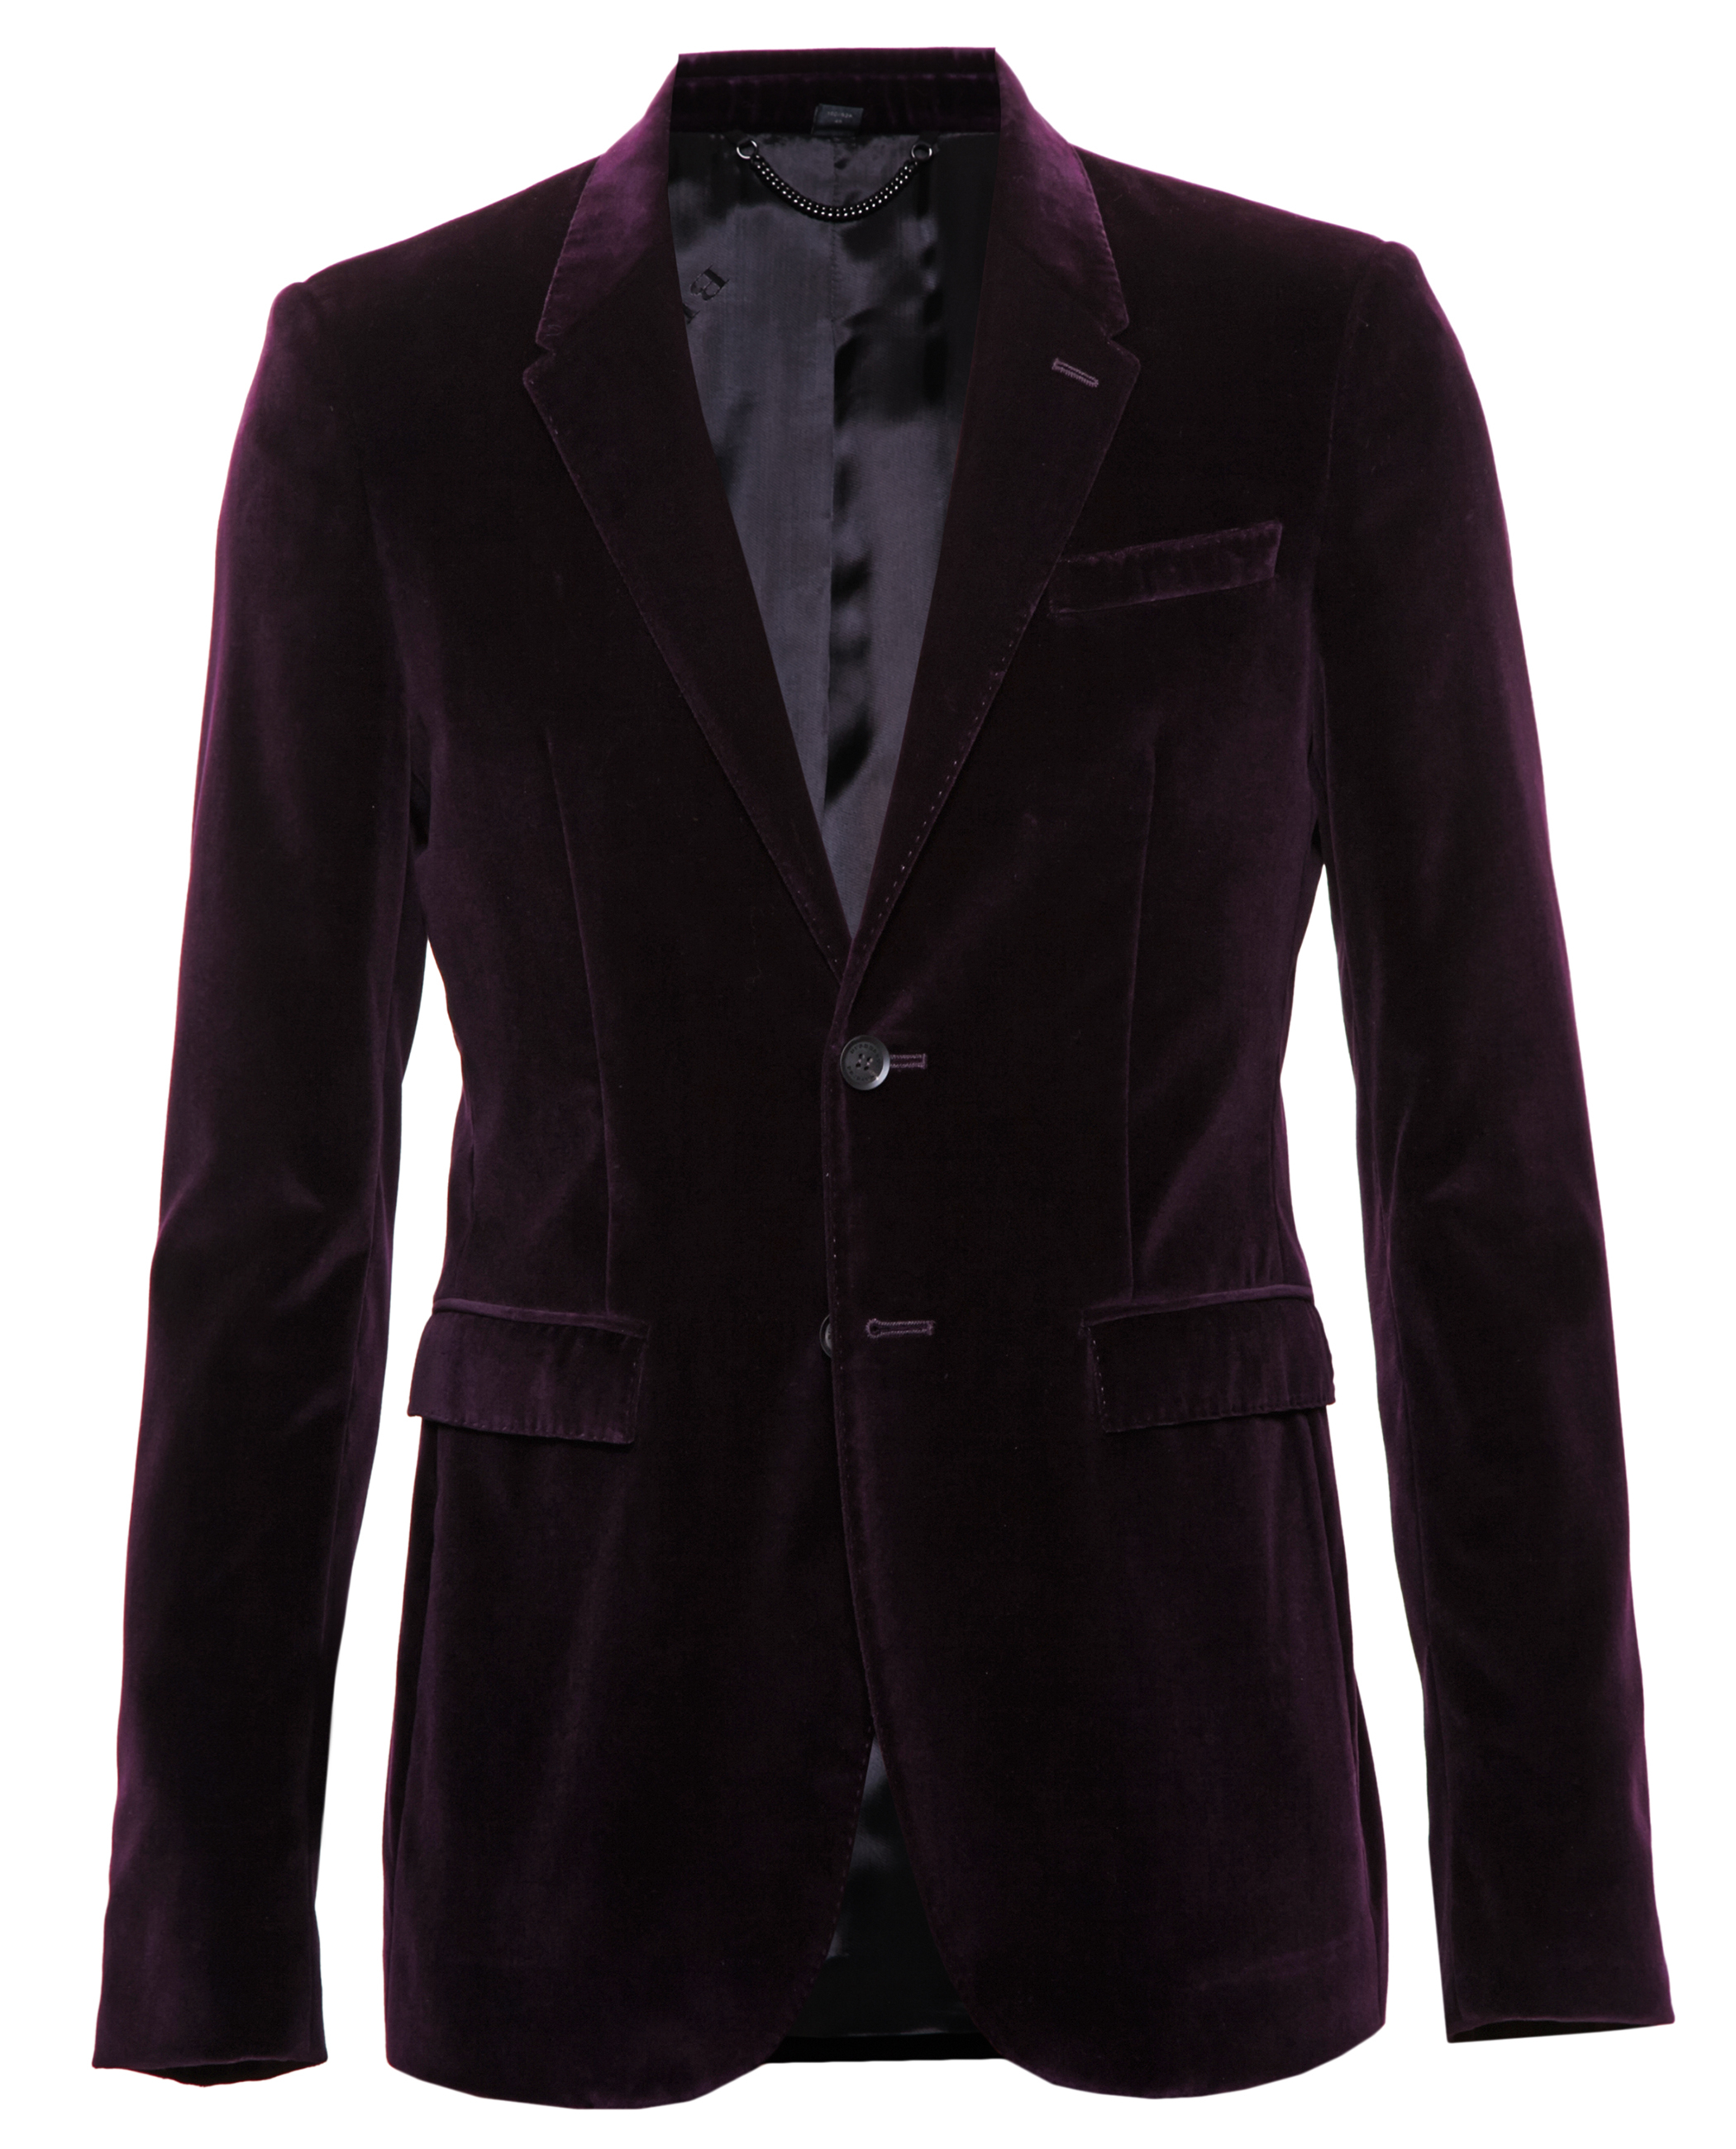 Lyst - Burberry Prorsum Velvet Jacket in Purple for Men